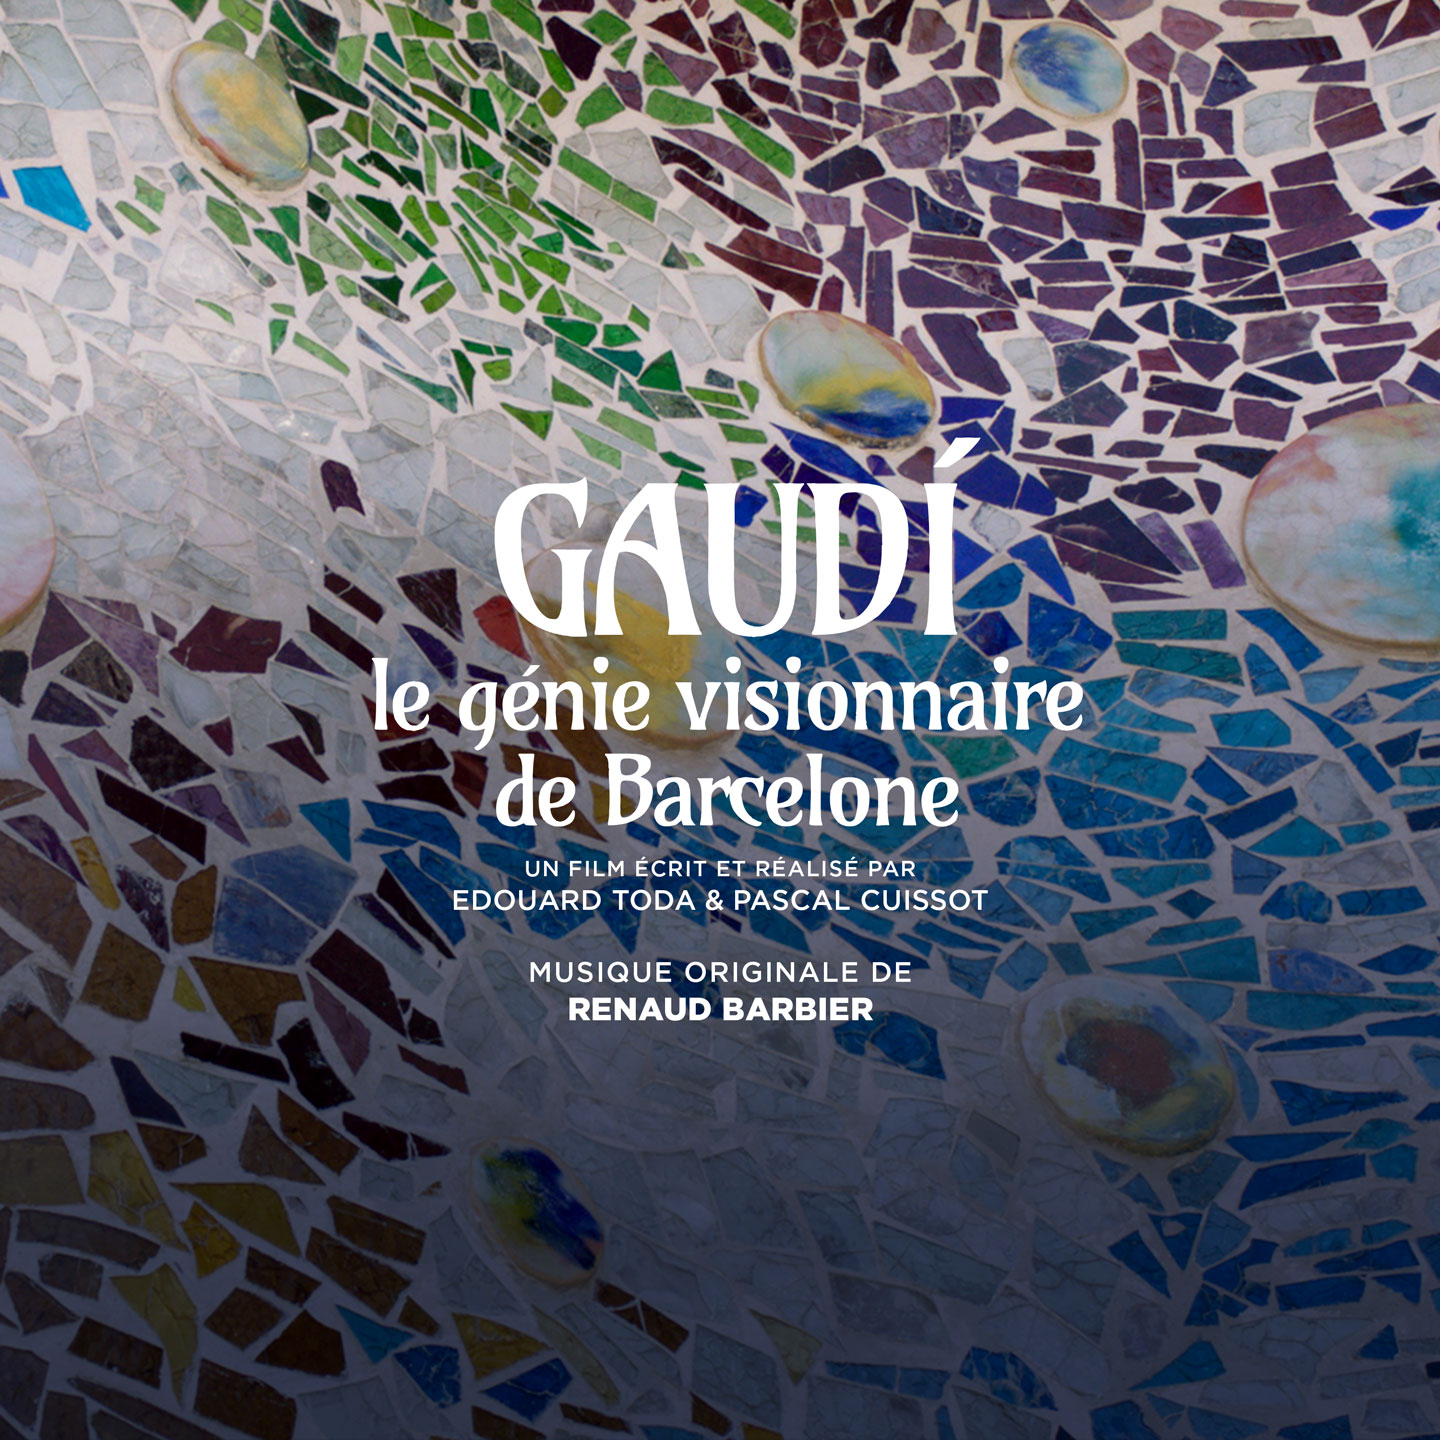 Gaudi, le gnie visionnaire de Barcelone